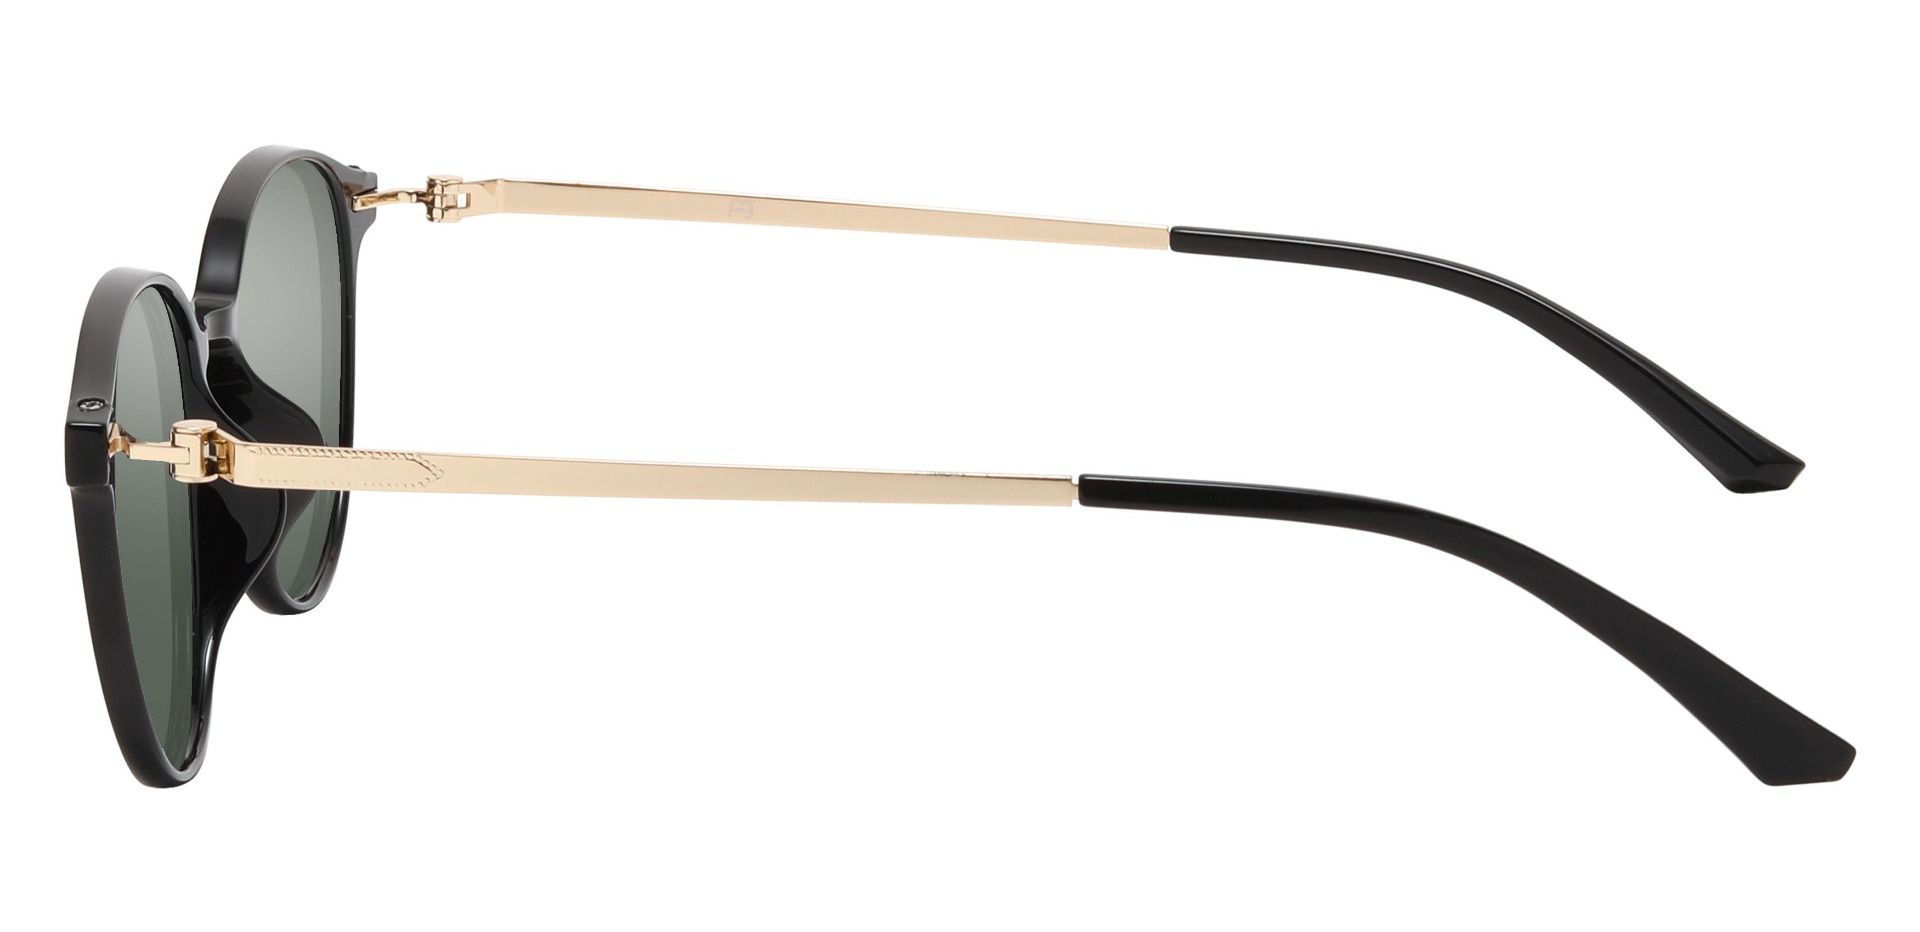 Springer Round Progressive Sunglasses - Black Frame With Green Lenses